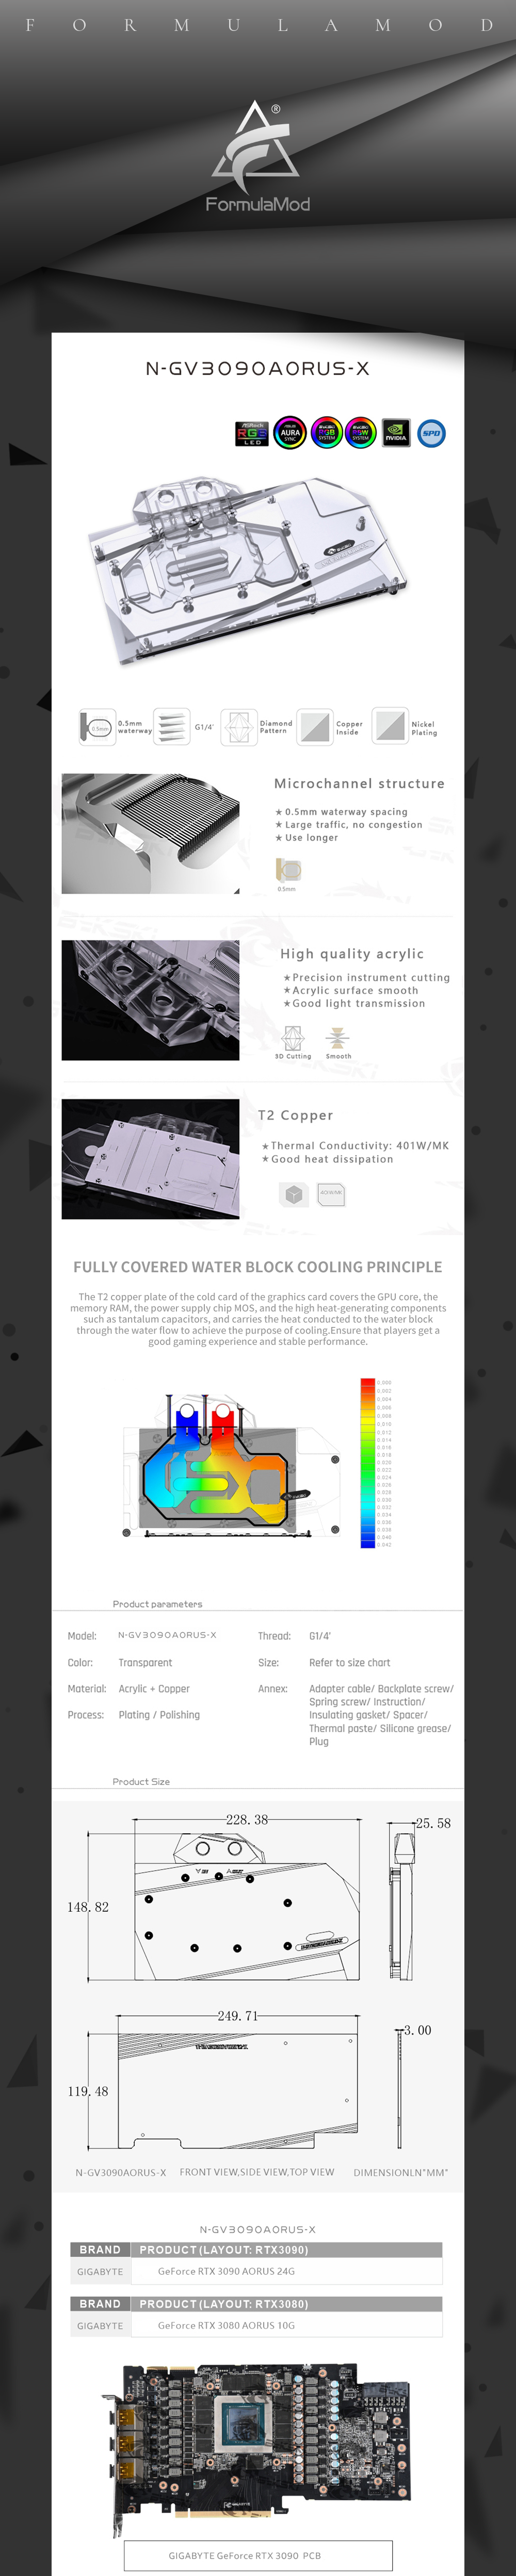 Bykski GPU Water Cooling Block For Gigabyte RTX 3090/3080/3080Ti AORUS, Graphics Card Liquid Cooler, N-GV3090AORUS-X  